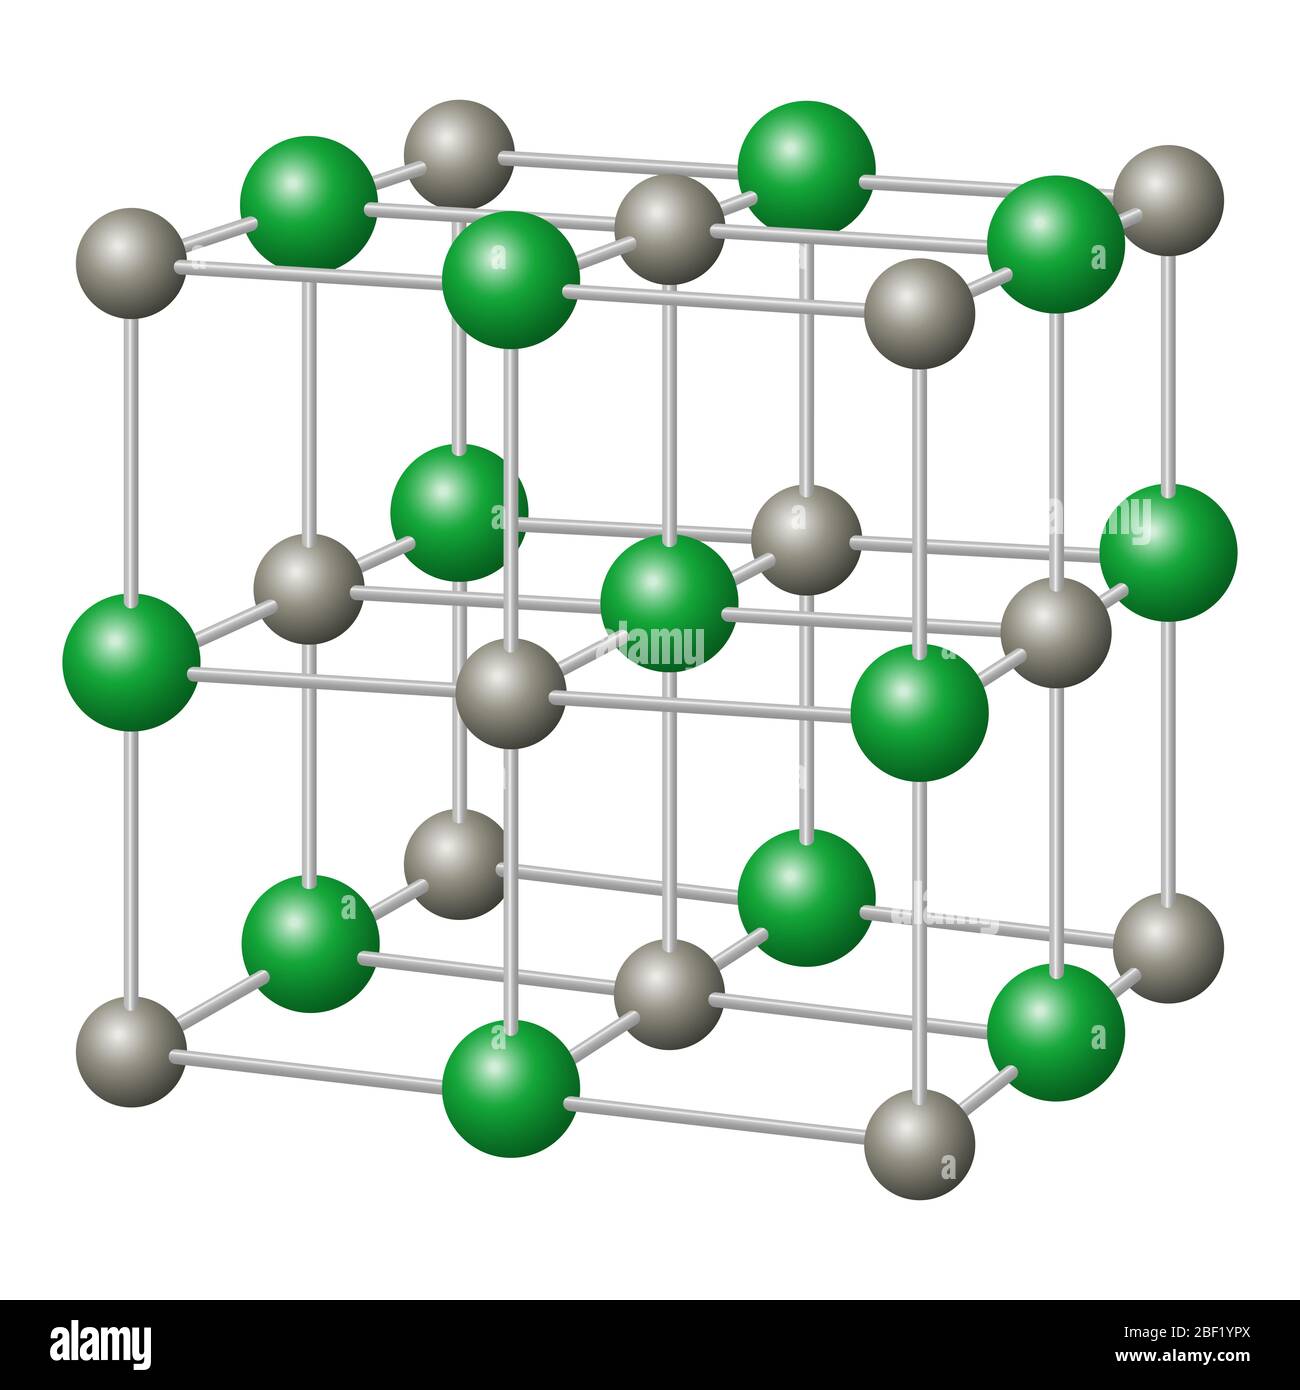 Natriumchlorid, NaCl Kristallstruktur mit Natrium in grau und Chlorid in grün. Chemische Verbindung, essbar als Kochsalz. Stockfoto